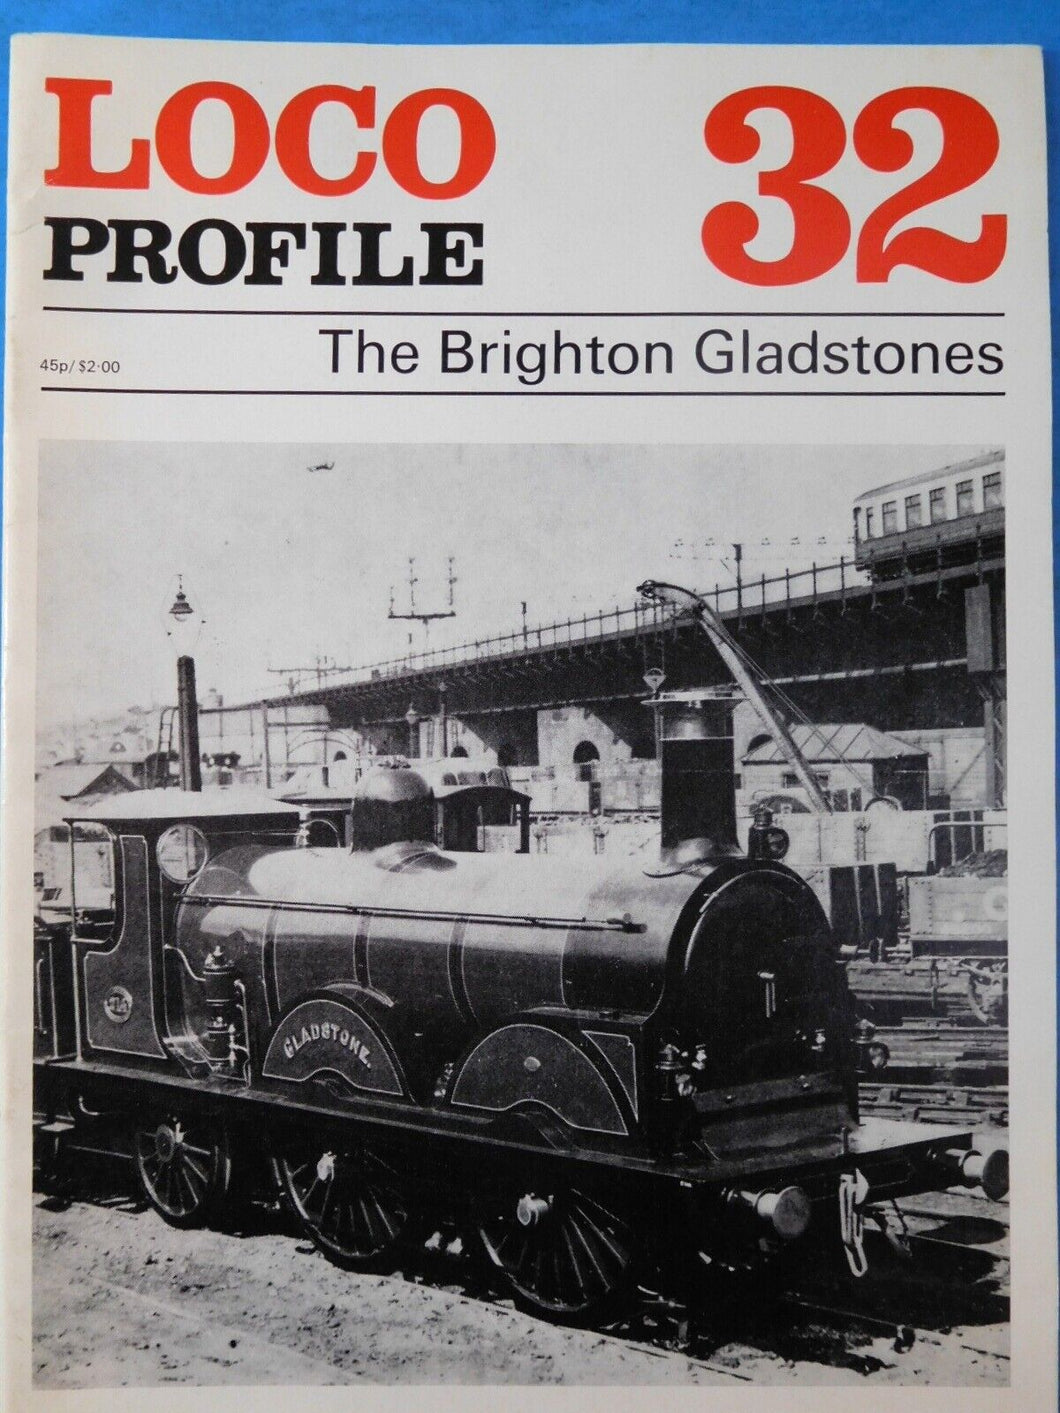 Loco Profile #32 The Brighton Gladstones